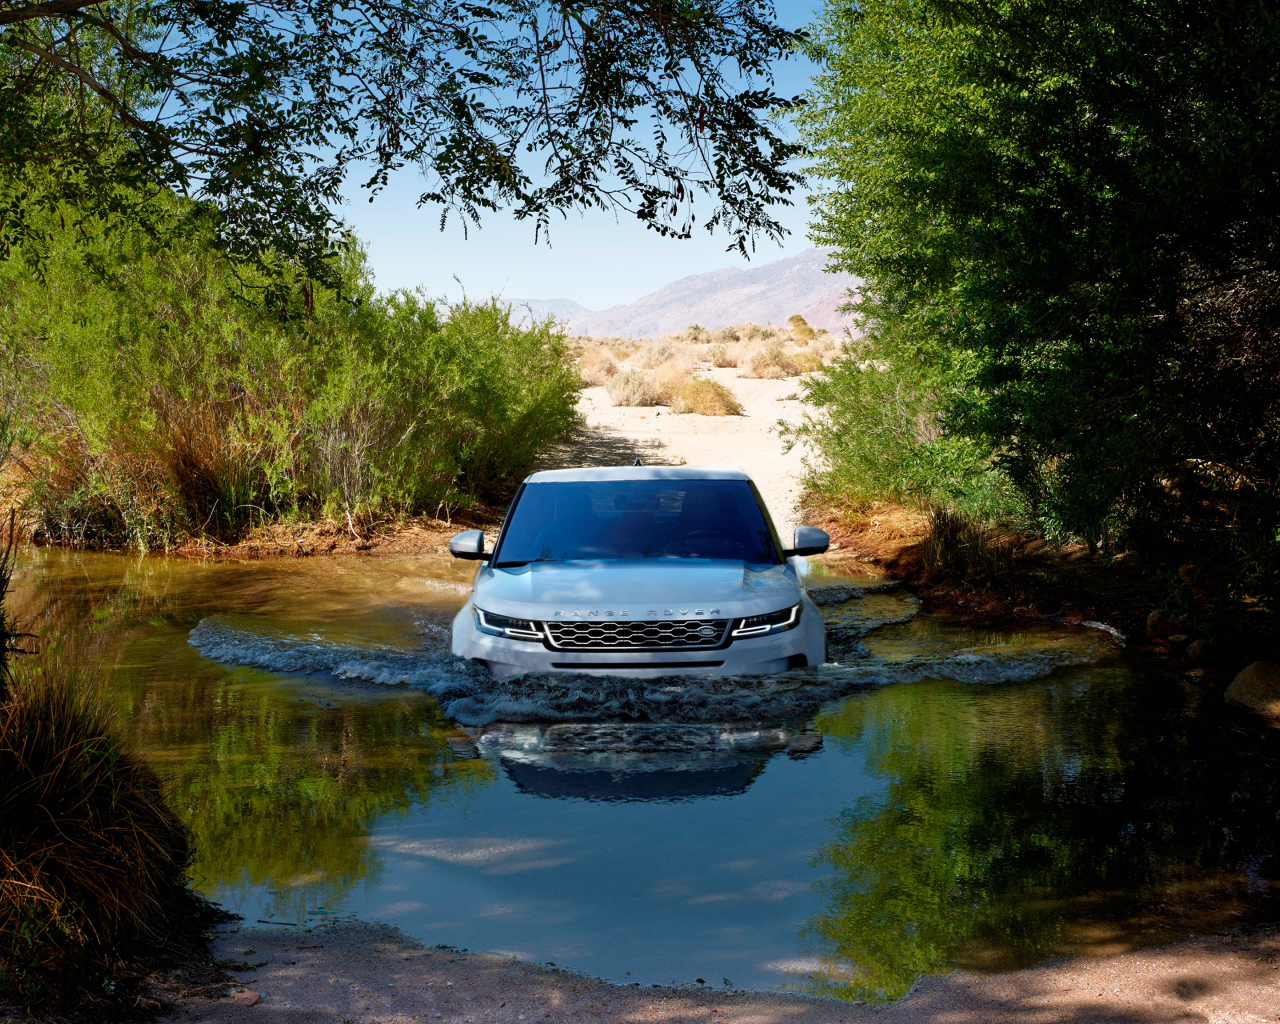 White SUV Range Rover Evoque rides on water